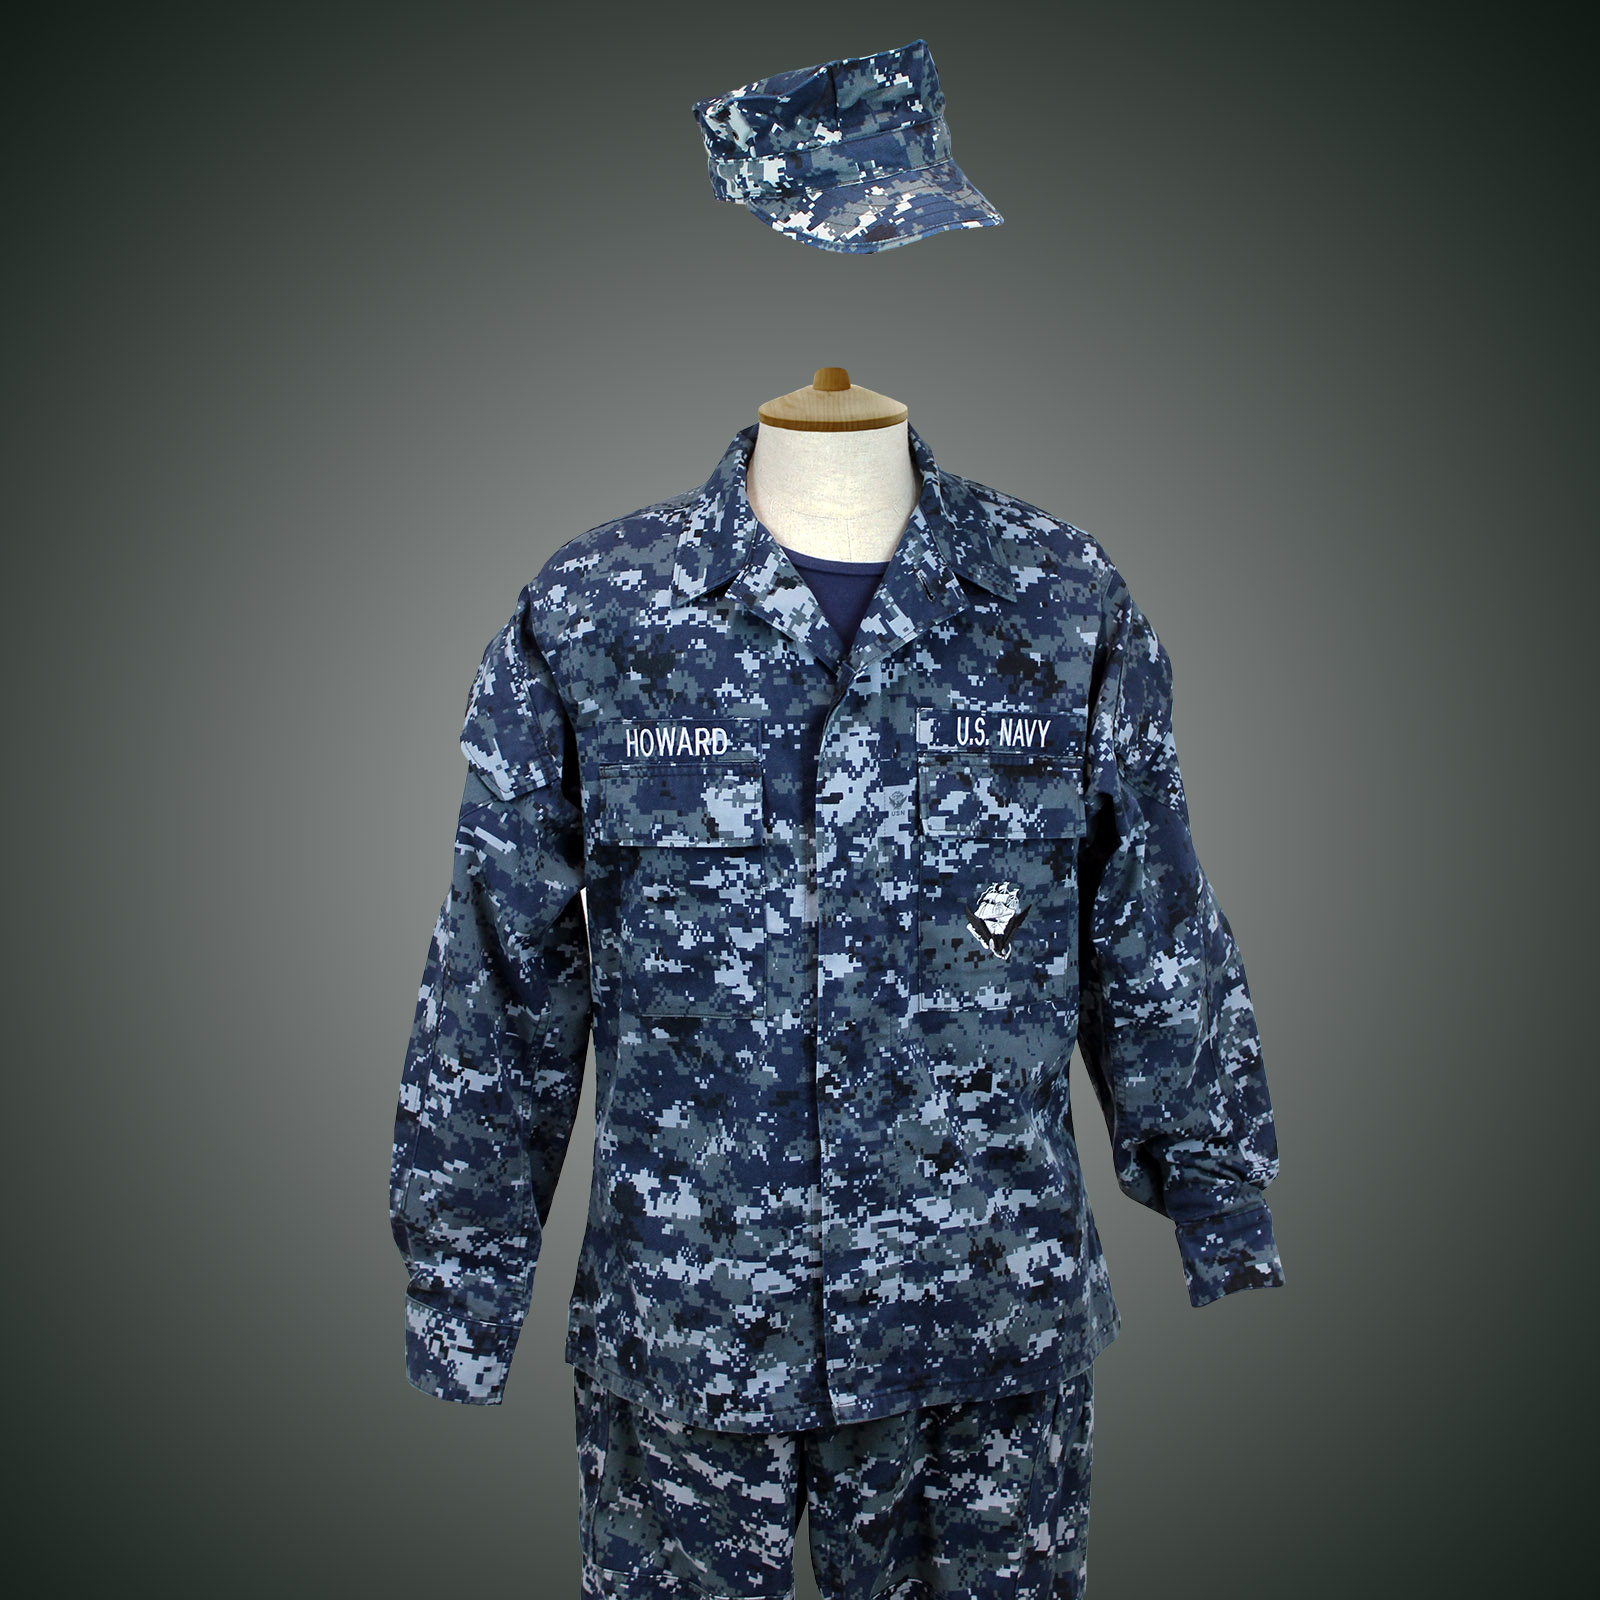 US Navy Tenue de service courant 2010s_ - La compagnie du costume